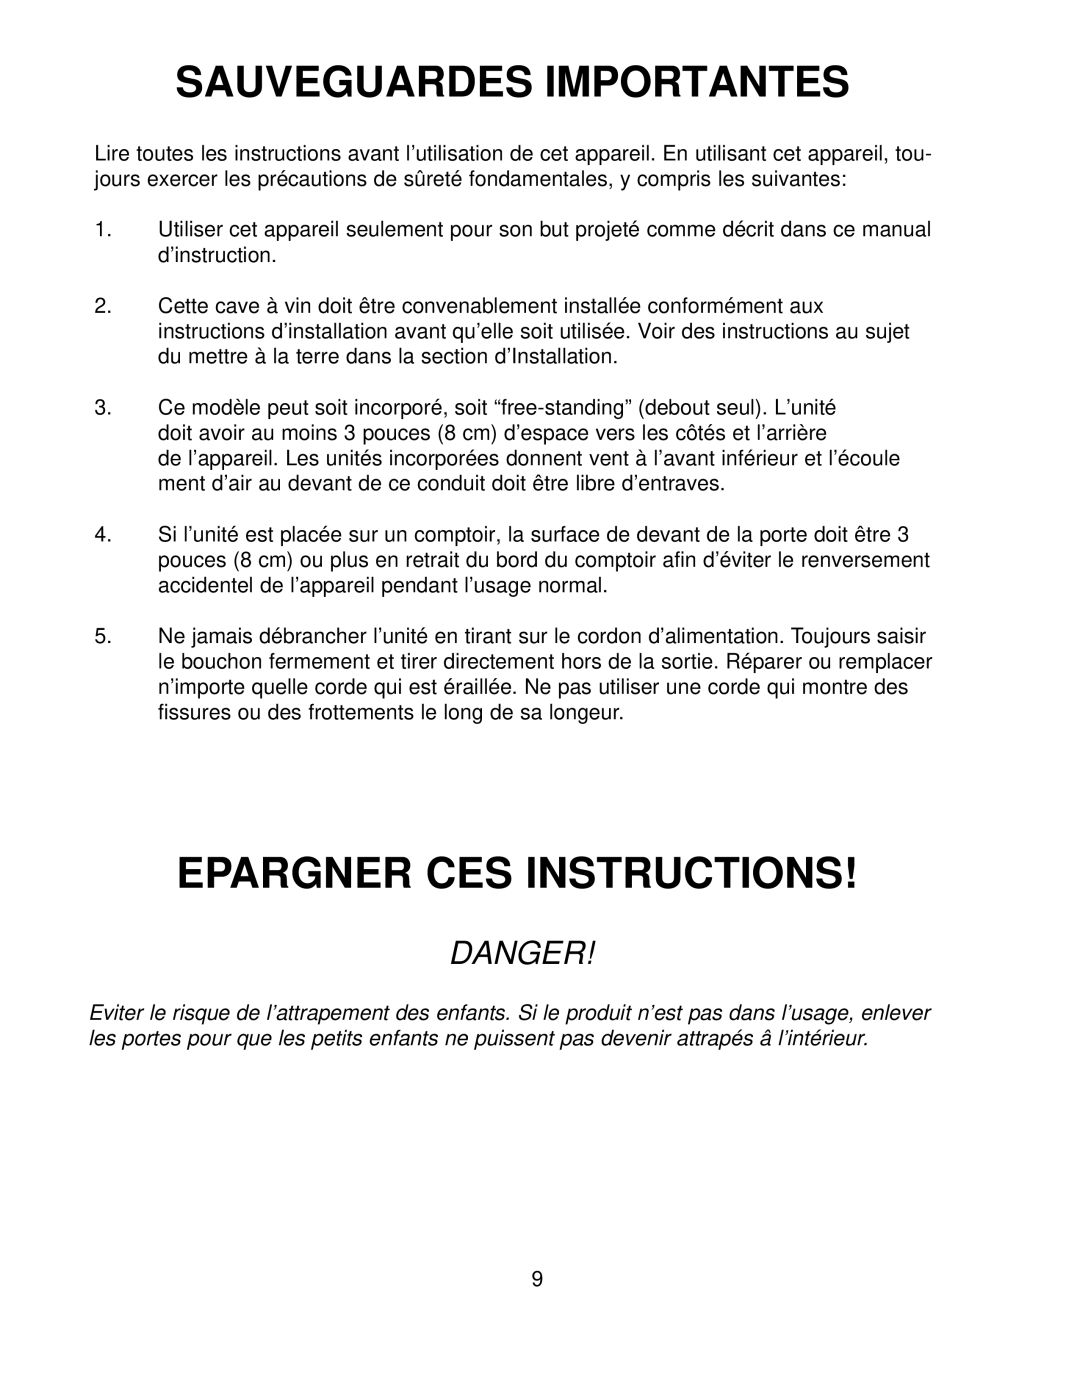 Franklin Industries, L.L.C FWC36 manual Sauveguardes Importantes, Epargner Ces Instructions, Danger 